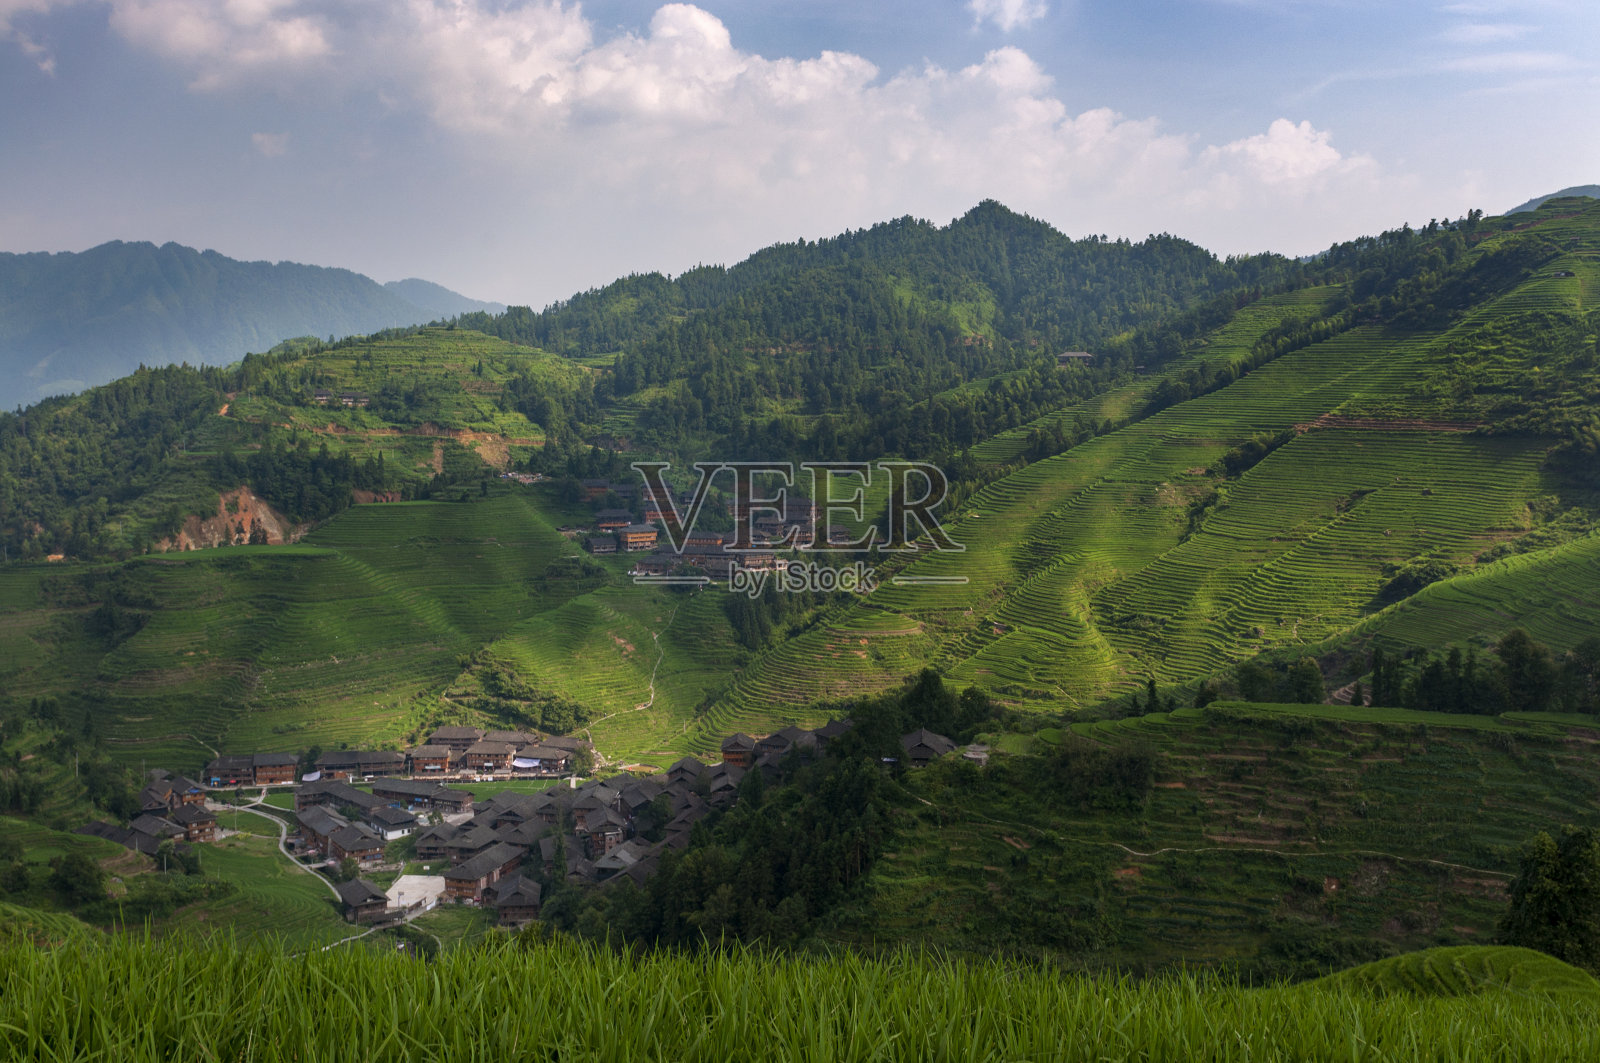 中国广西的大寨村和周围的龙胜梯田美景照片摄影图片